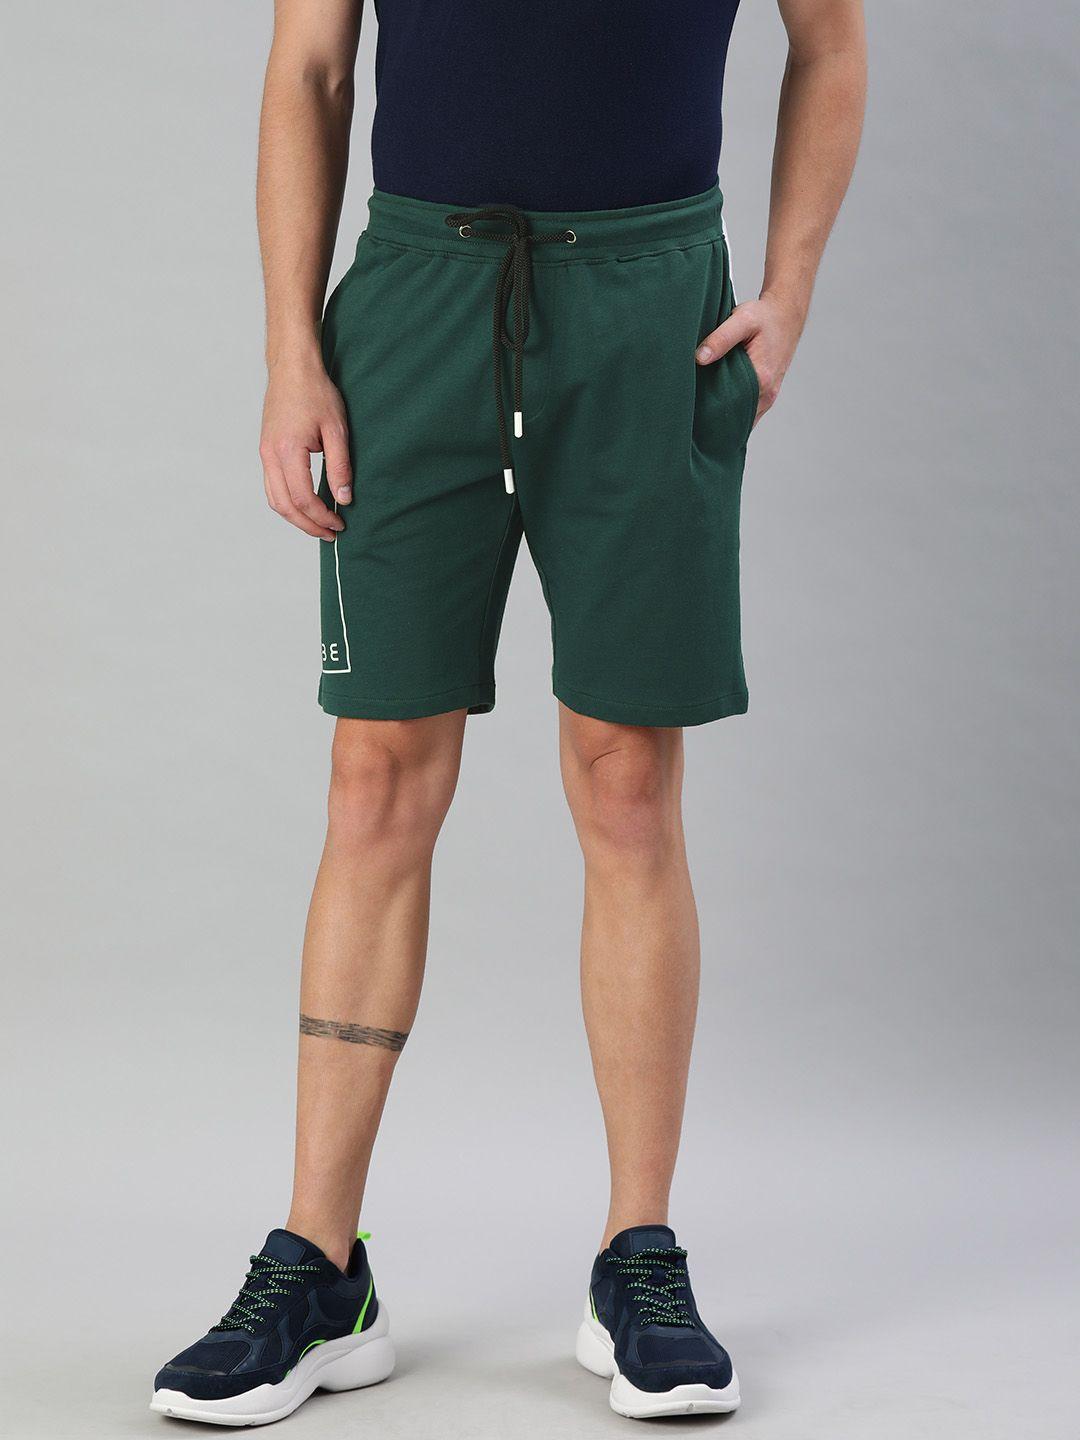 allen solly tribe men dark green solid regular fit shorts